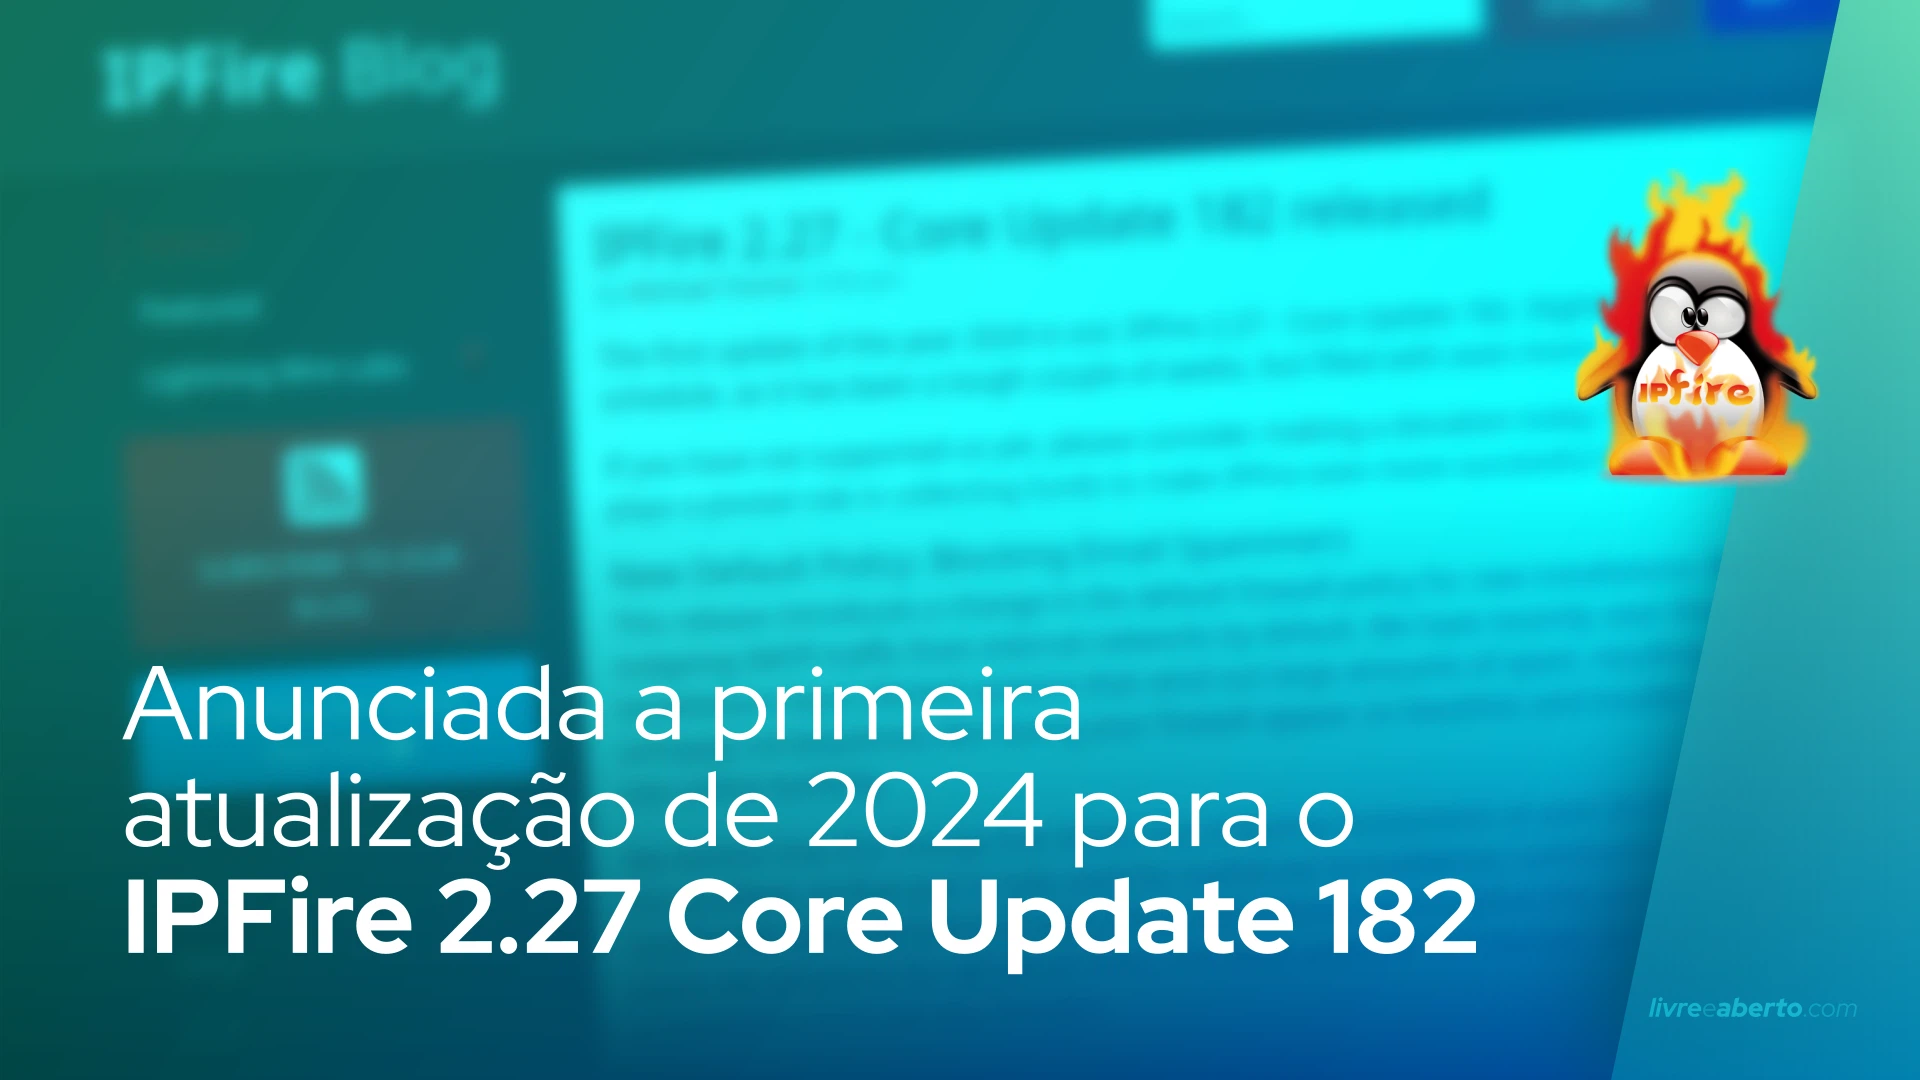 Anunciada a primeira atualização de 2024 para o IPFire 2.27 Core Update 182